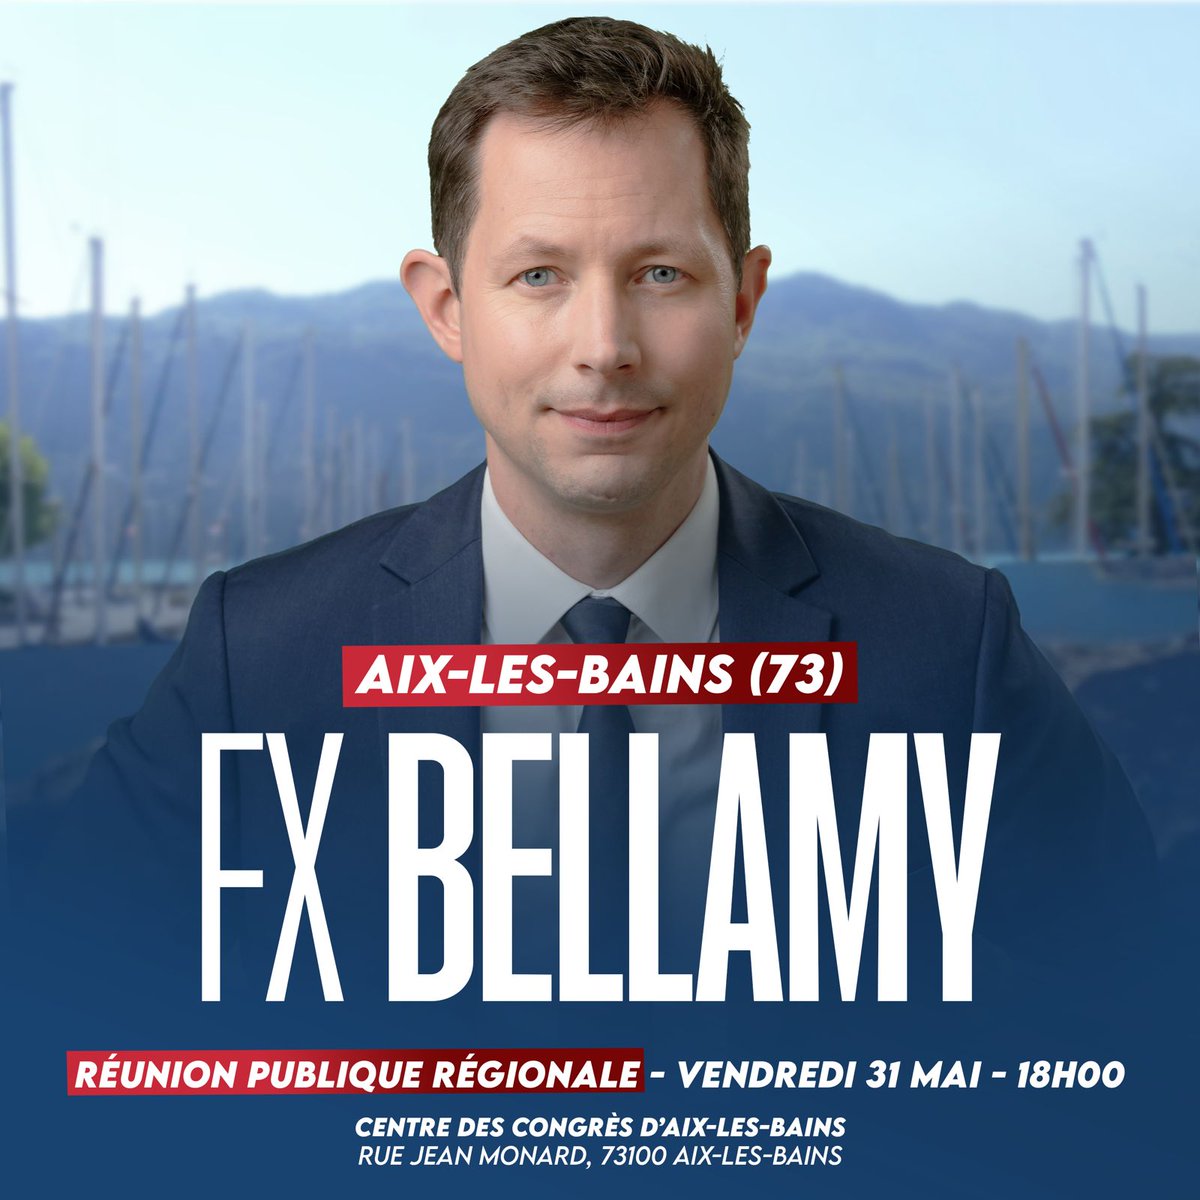 Retrouvons-nous le vendredi 31 mai à Aix-les-Bains. #AvecBellamy